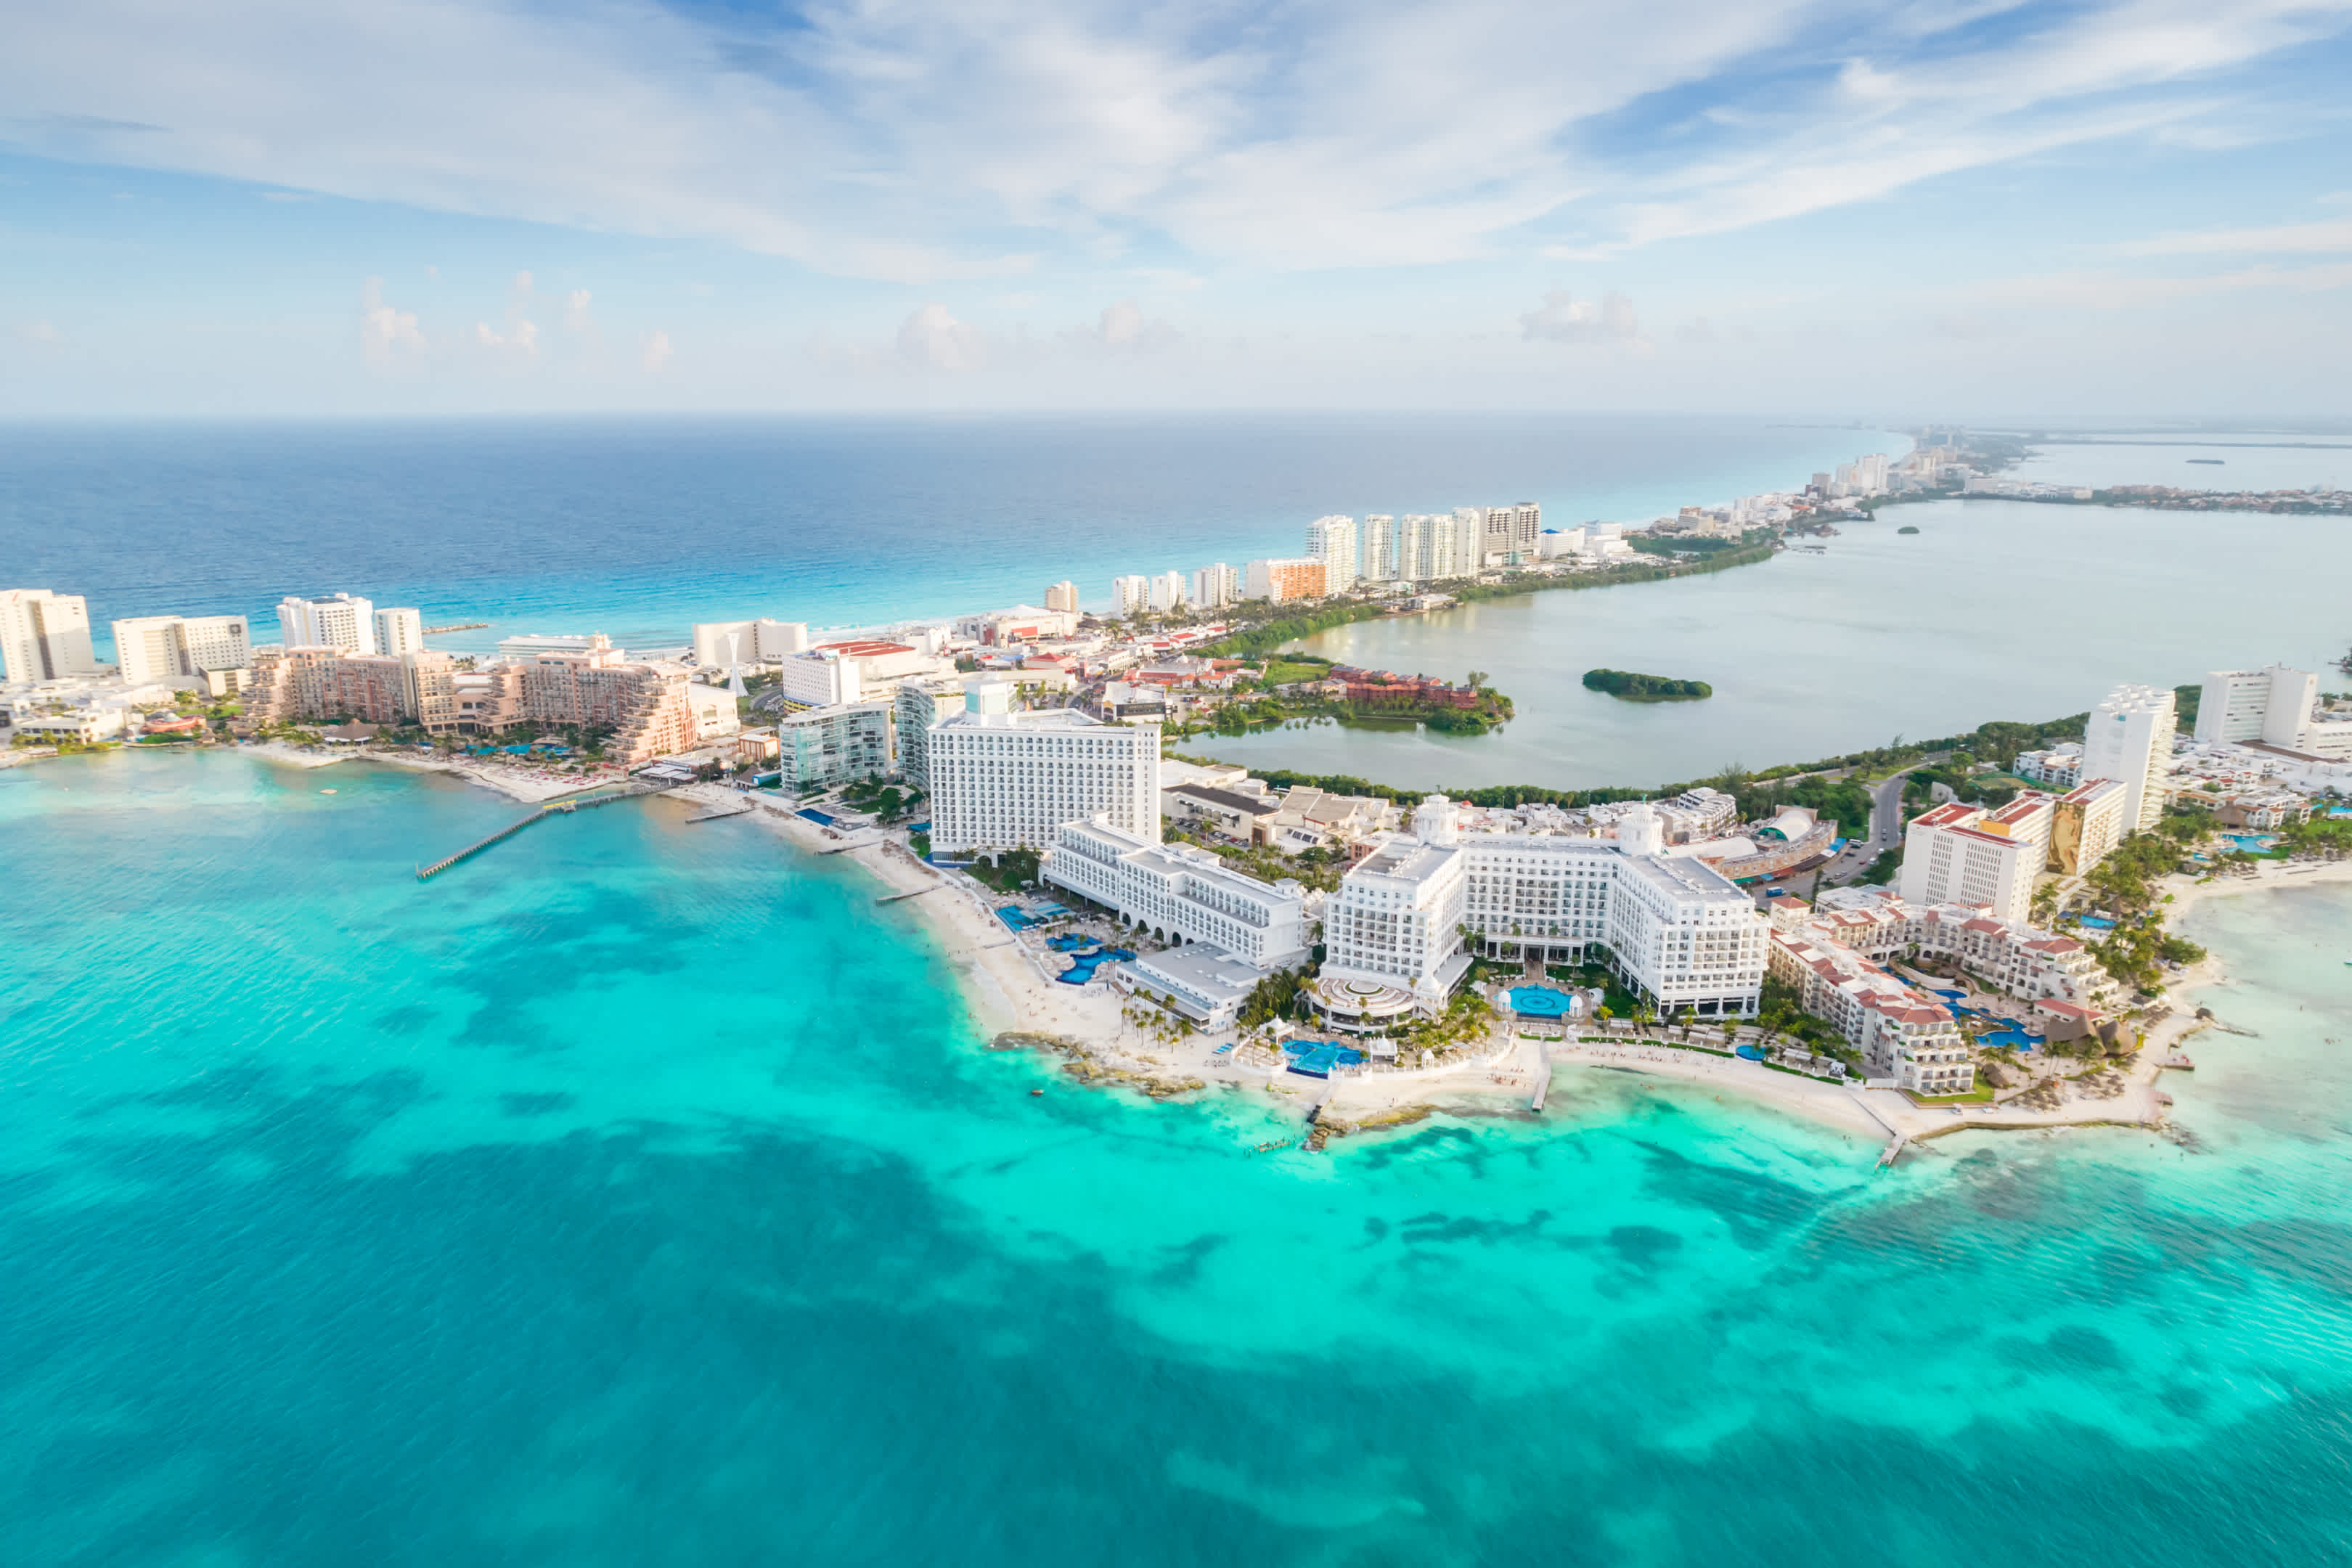 Panorama aérien de la plage de Cancun et de la zone hôtelière de la ville au Mexique. Paysage de la côte caraïbe de la station mexicaine avec la plage Playa Caracol et la rue Kukulcan. Riviera Maya dans la région de Quintana roo sur la péninsule du Yucatan